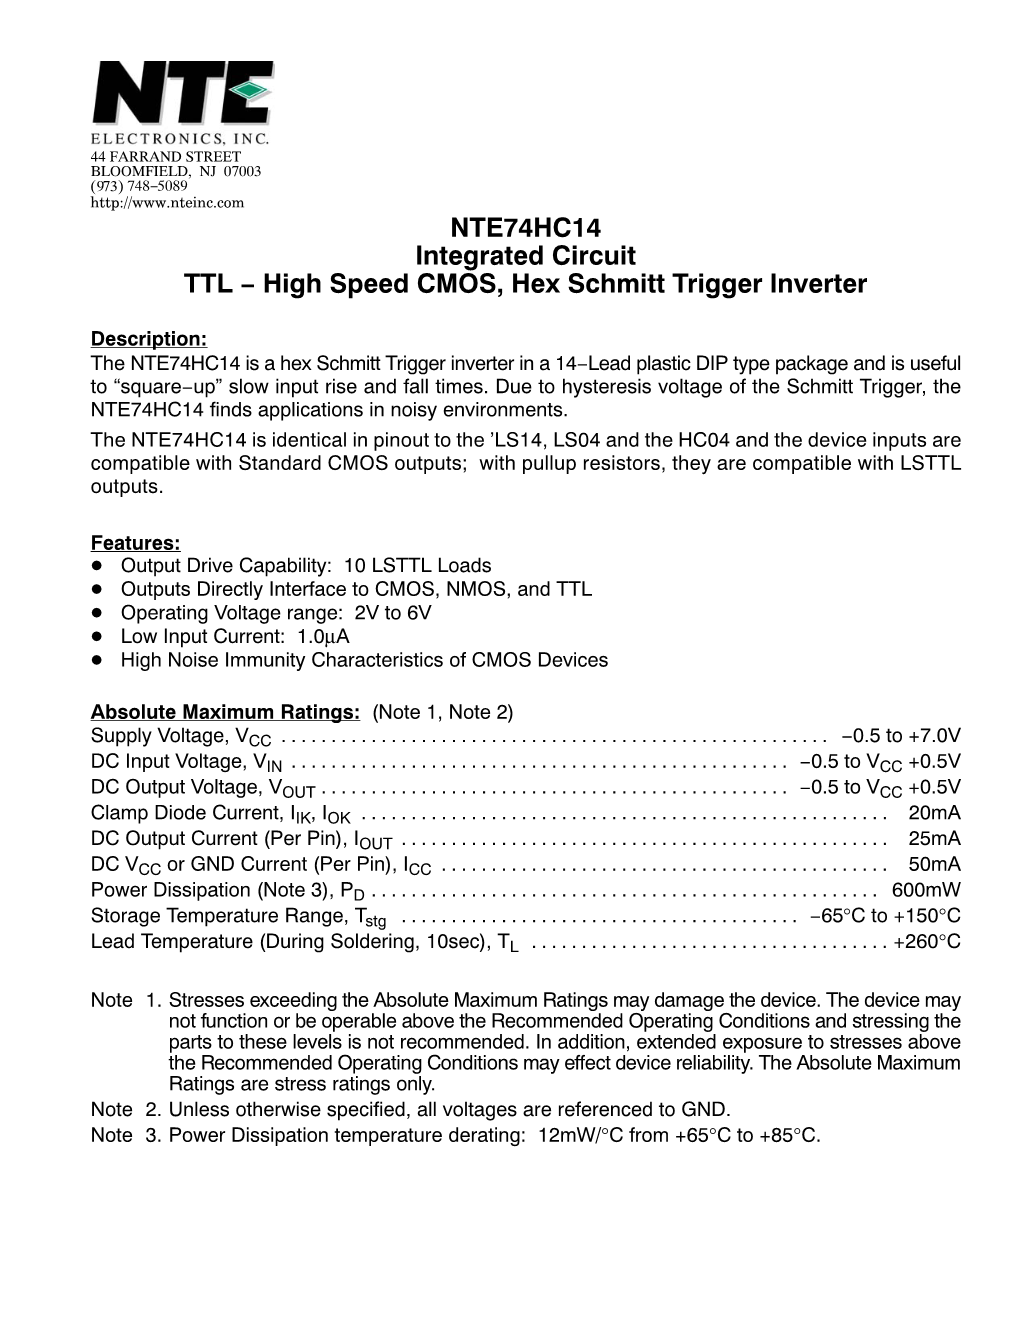 NTE74HC14 Integrated Circuit TTL − High Speed CMOS, Hex Schmitt Trigger Inverter